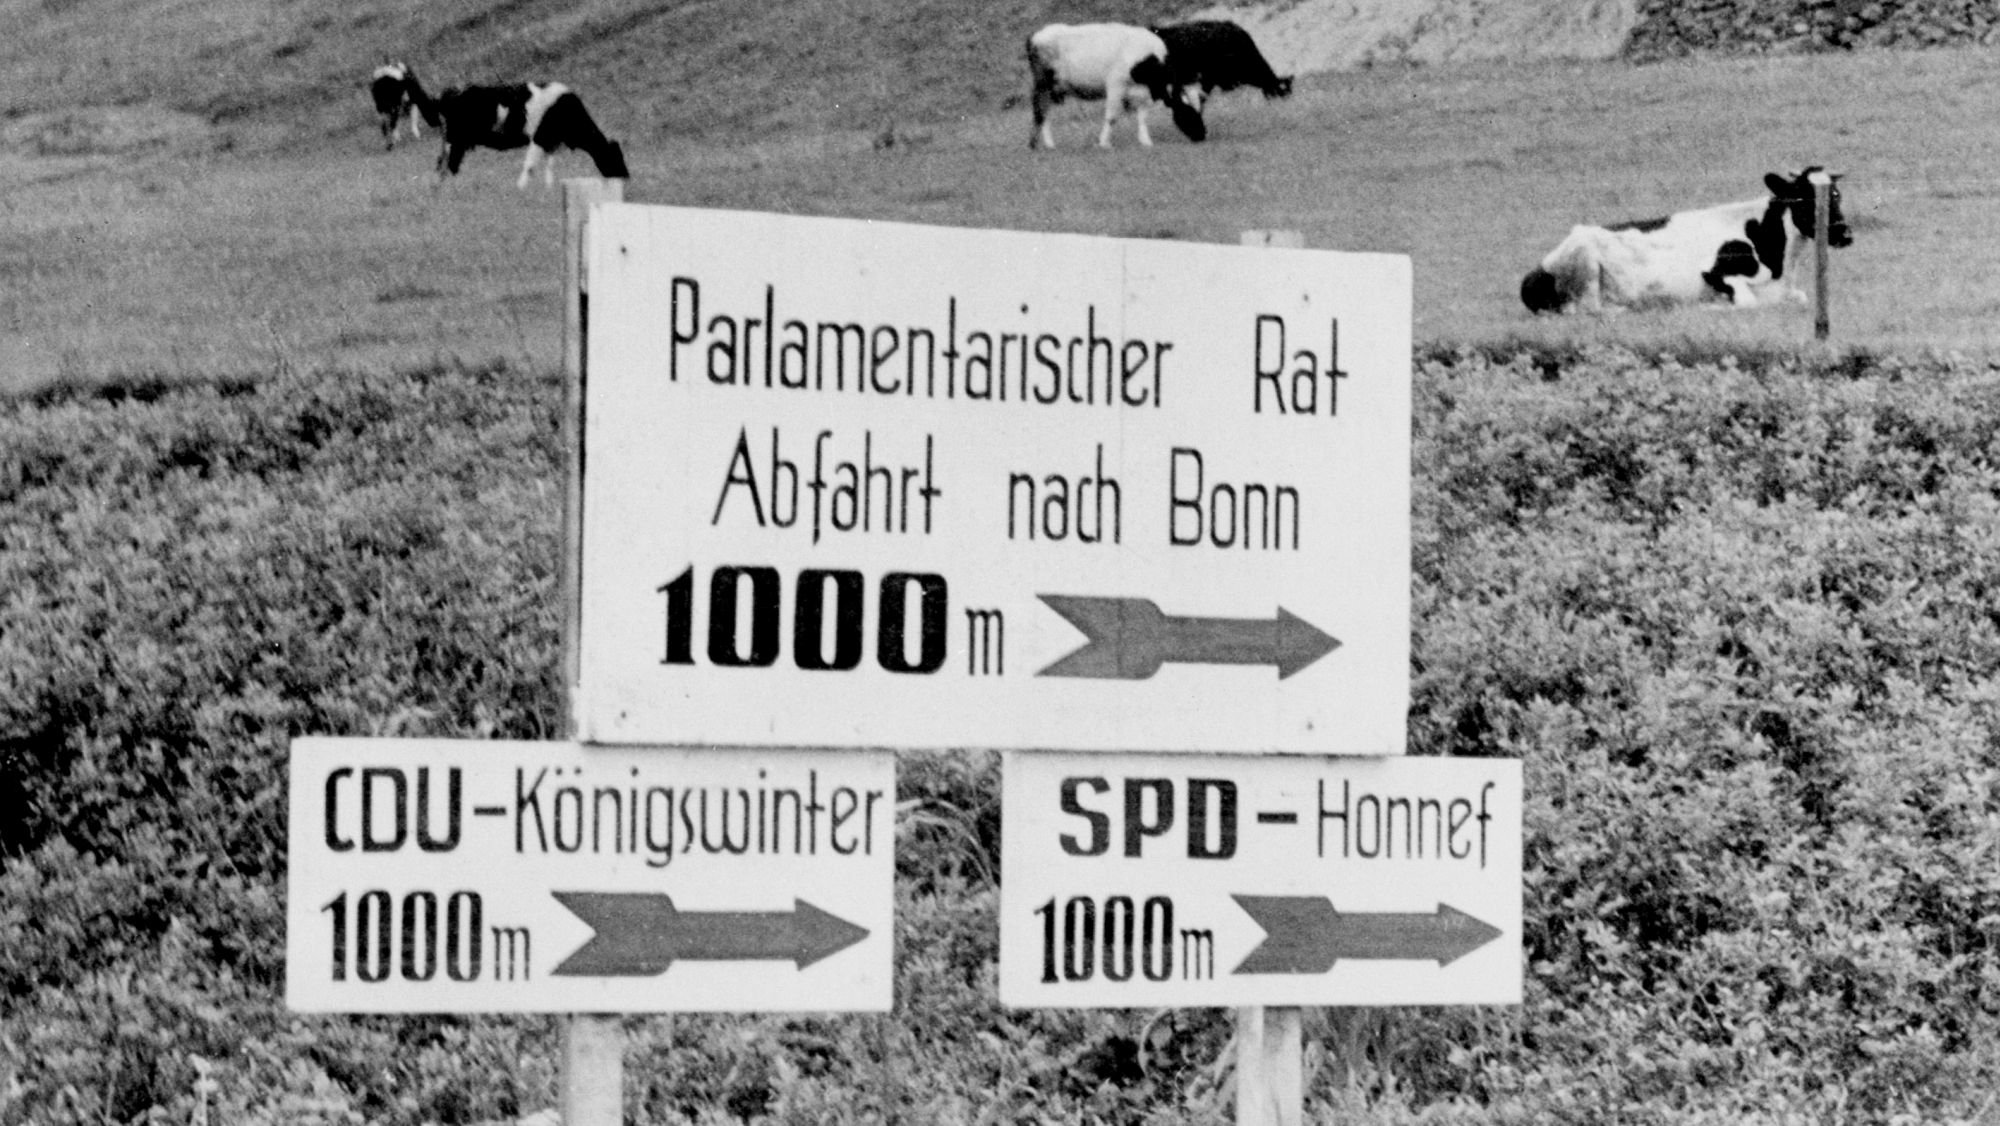 Auf drei Schildern steht: Parlamentarischer Rat Abfahrt Bonn 1000 m, CDU-Königwinter 1000 m, SPD-Honnef 1000 m. Die Pfeile auf den Schildern zeigen jeweils nach rechts. Im Hintergrund sieht man eine Wiese, auf der Kühe grasen.